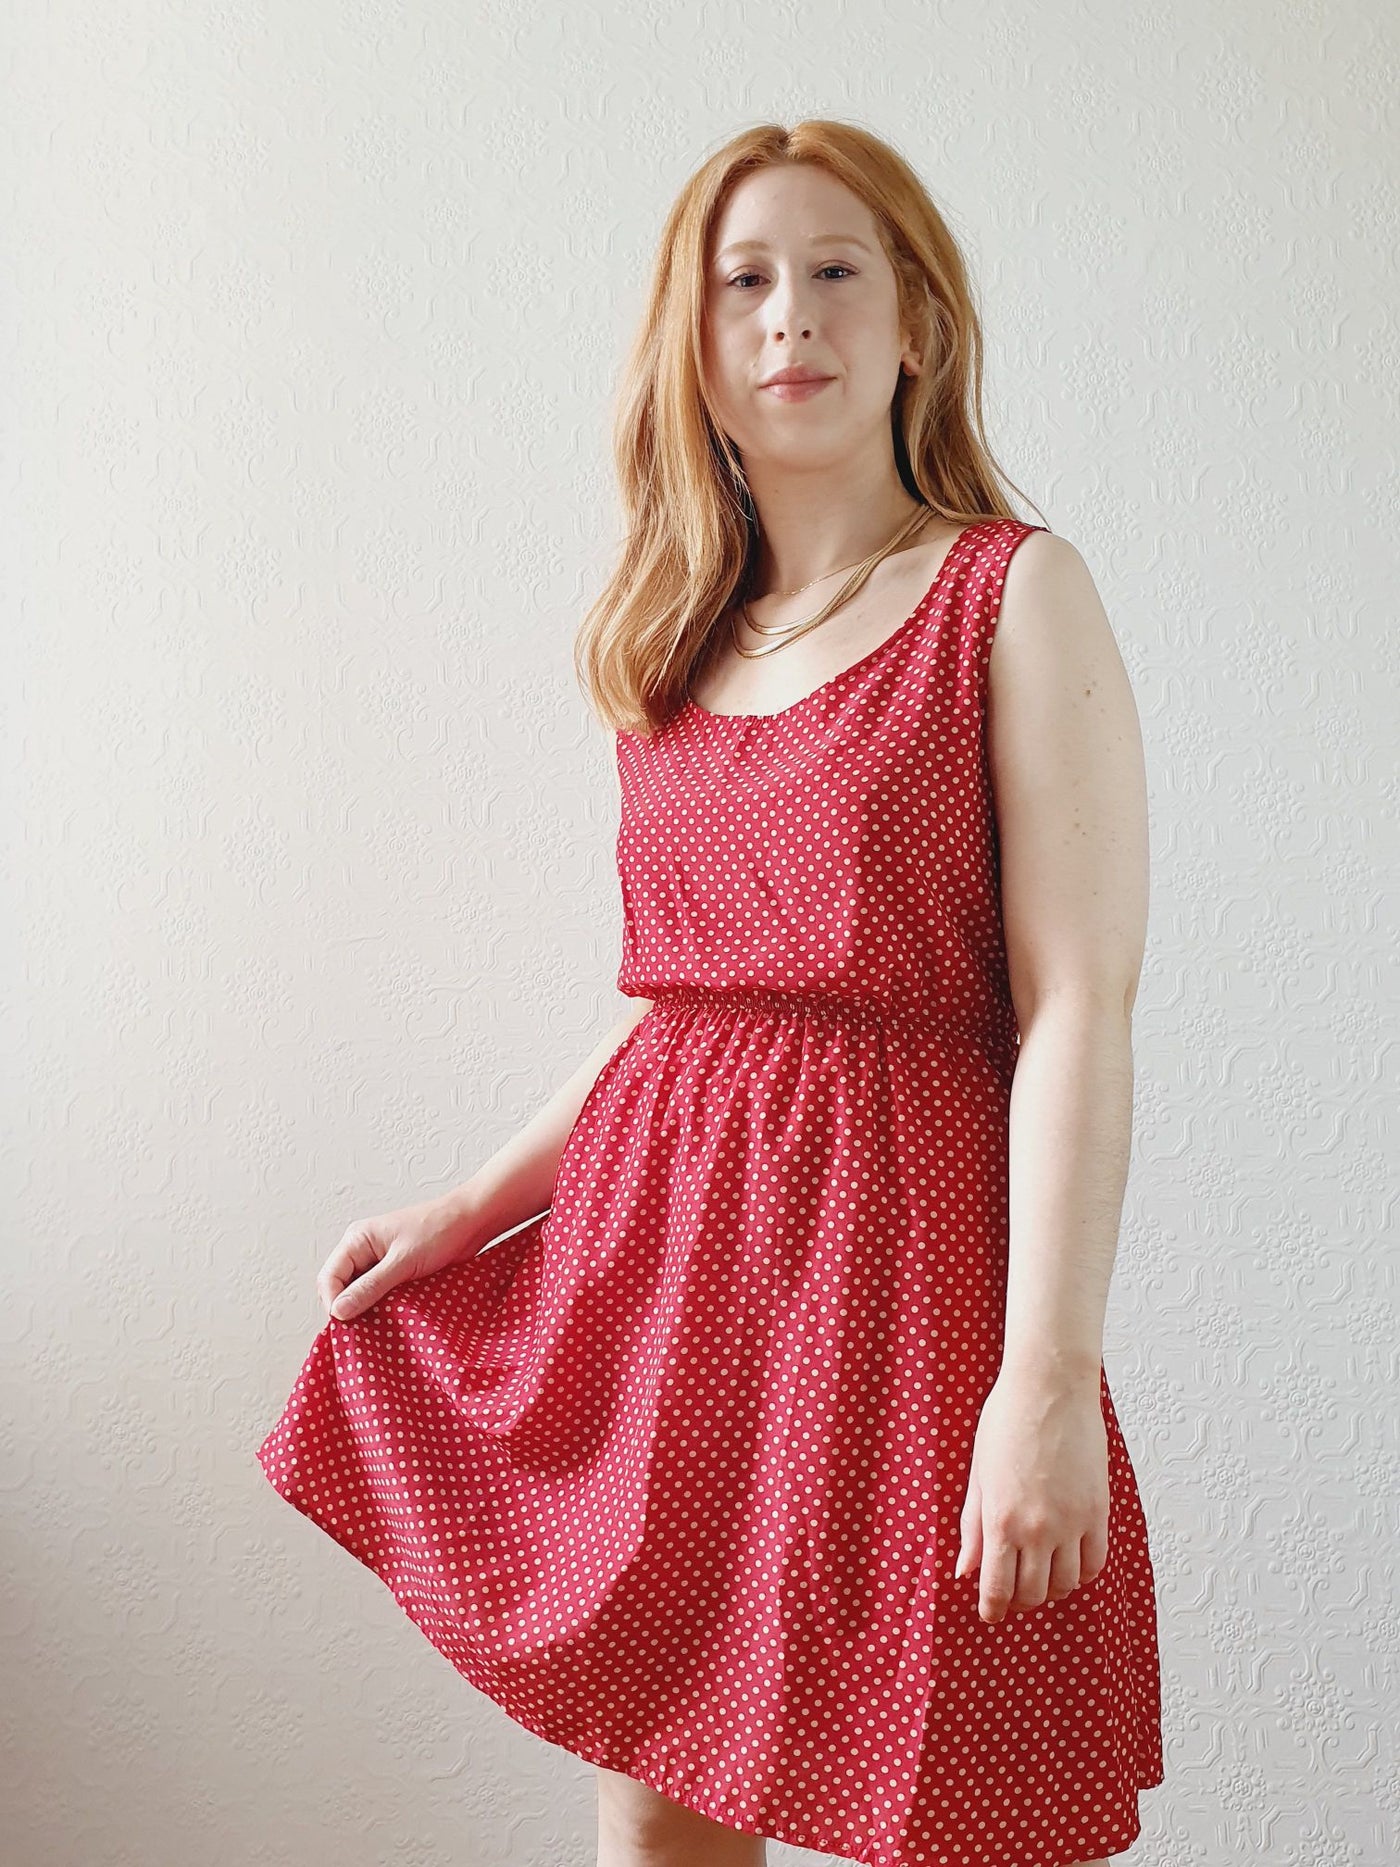 Vintage Red Polka Dot Dress - S